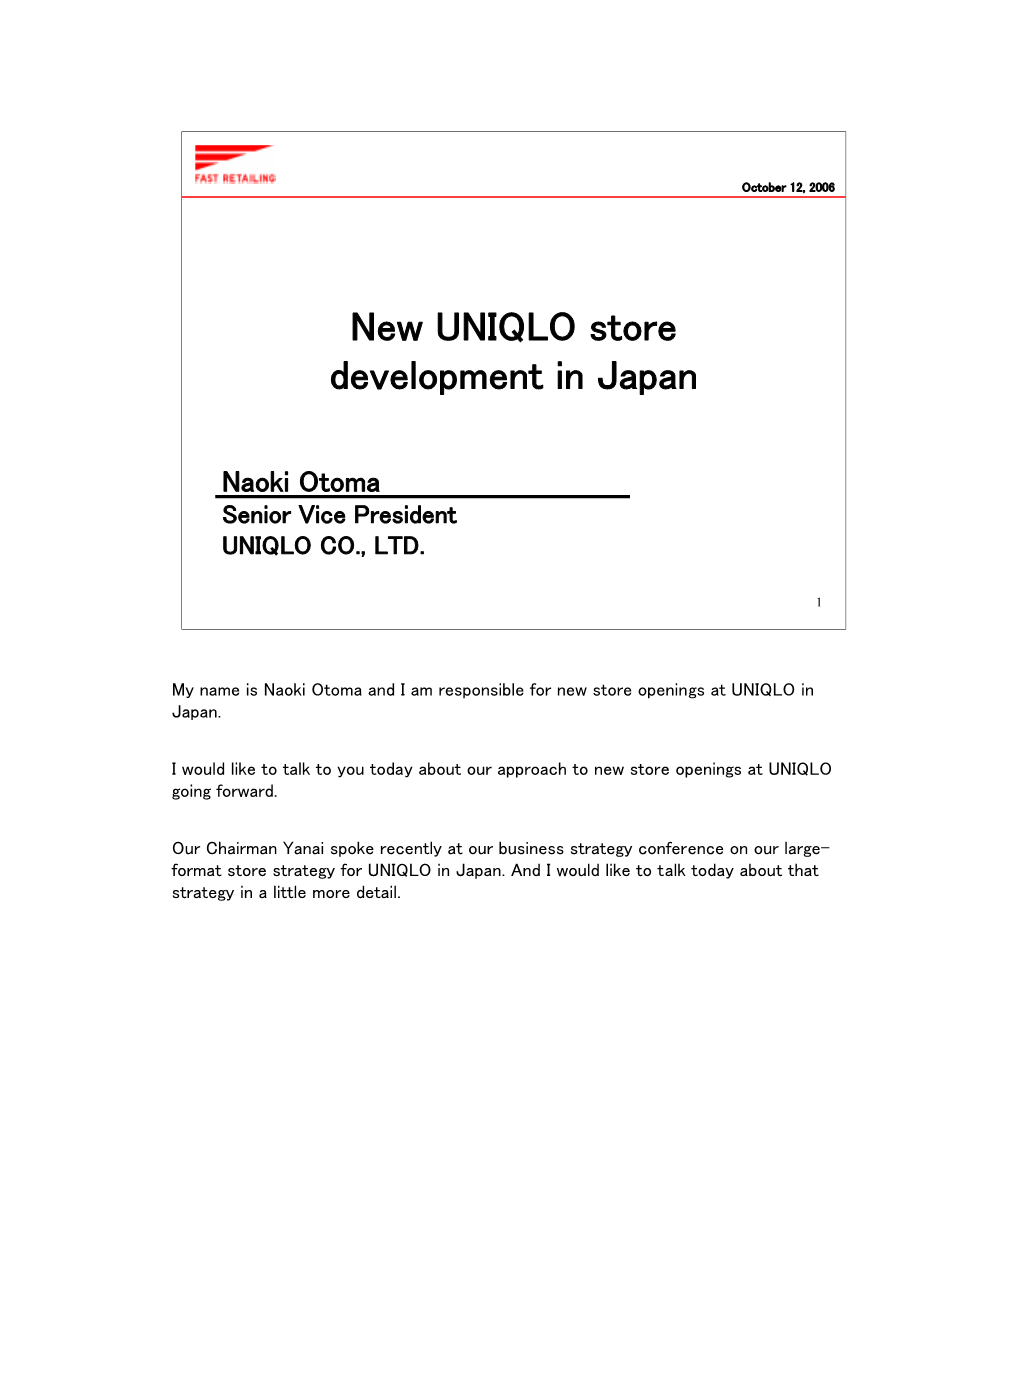 New UNIQLO Store Development in Japan